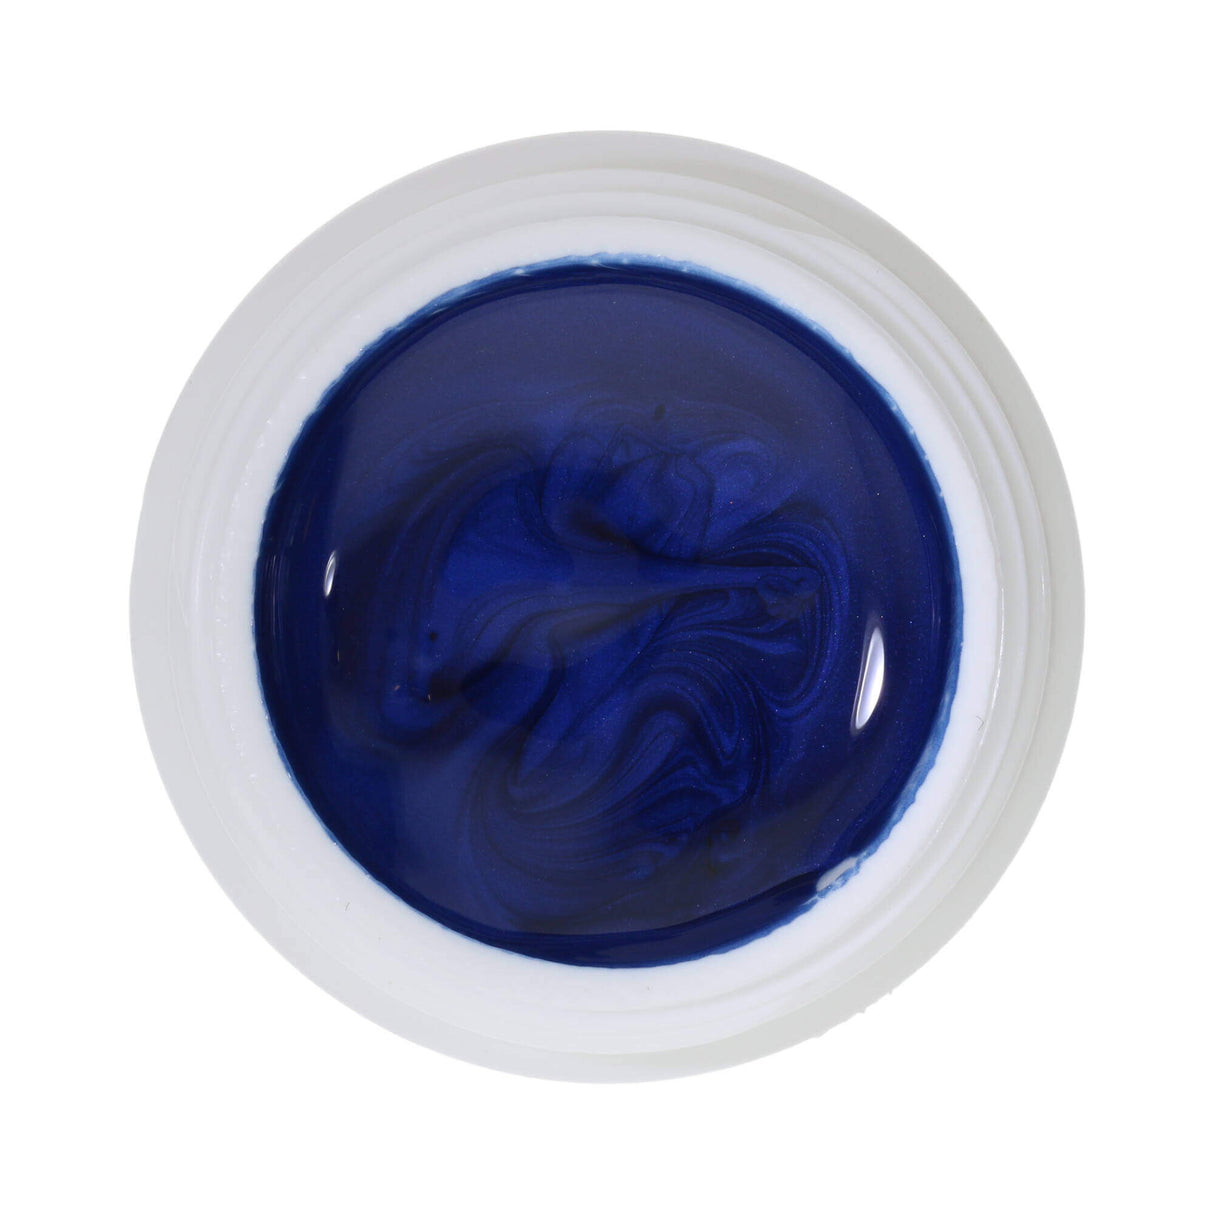 # 368 Premium EFFECT Color Gel 5ml Dark blue with a subtle shimmer